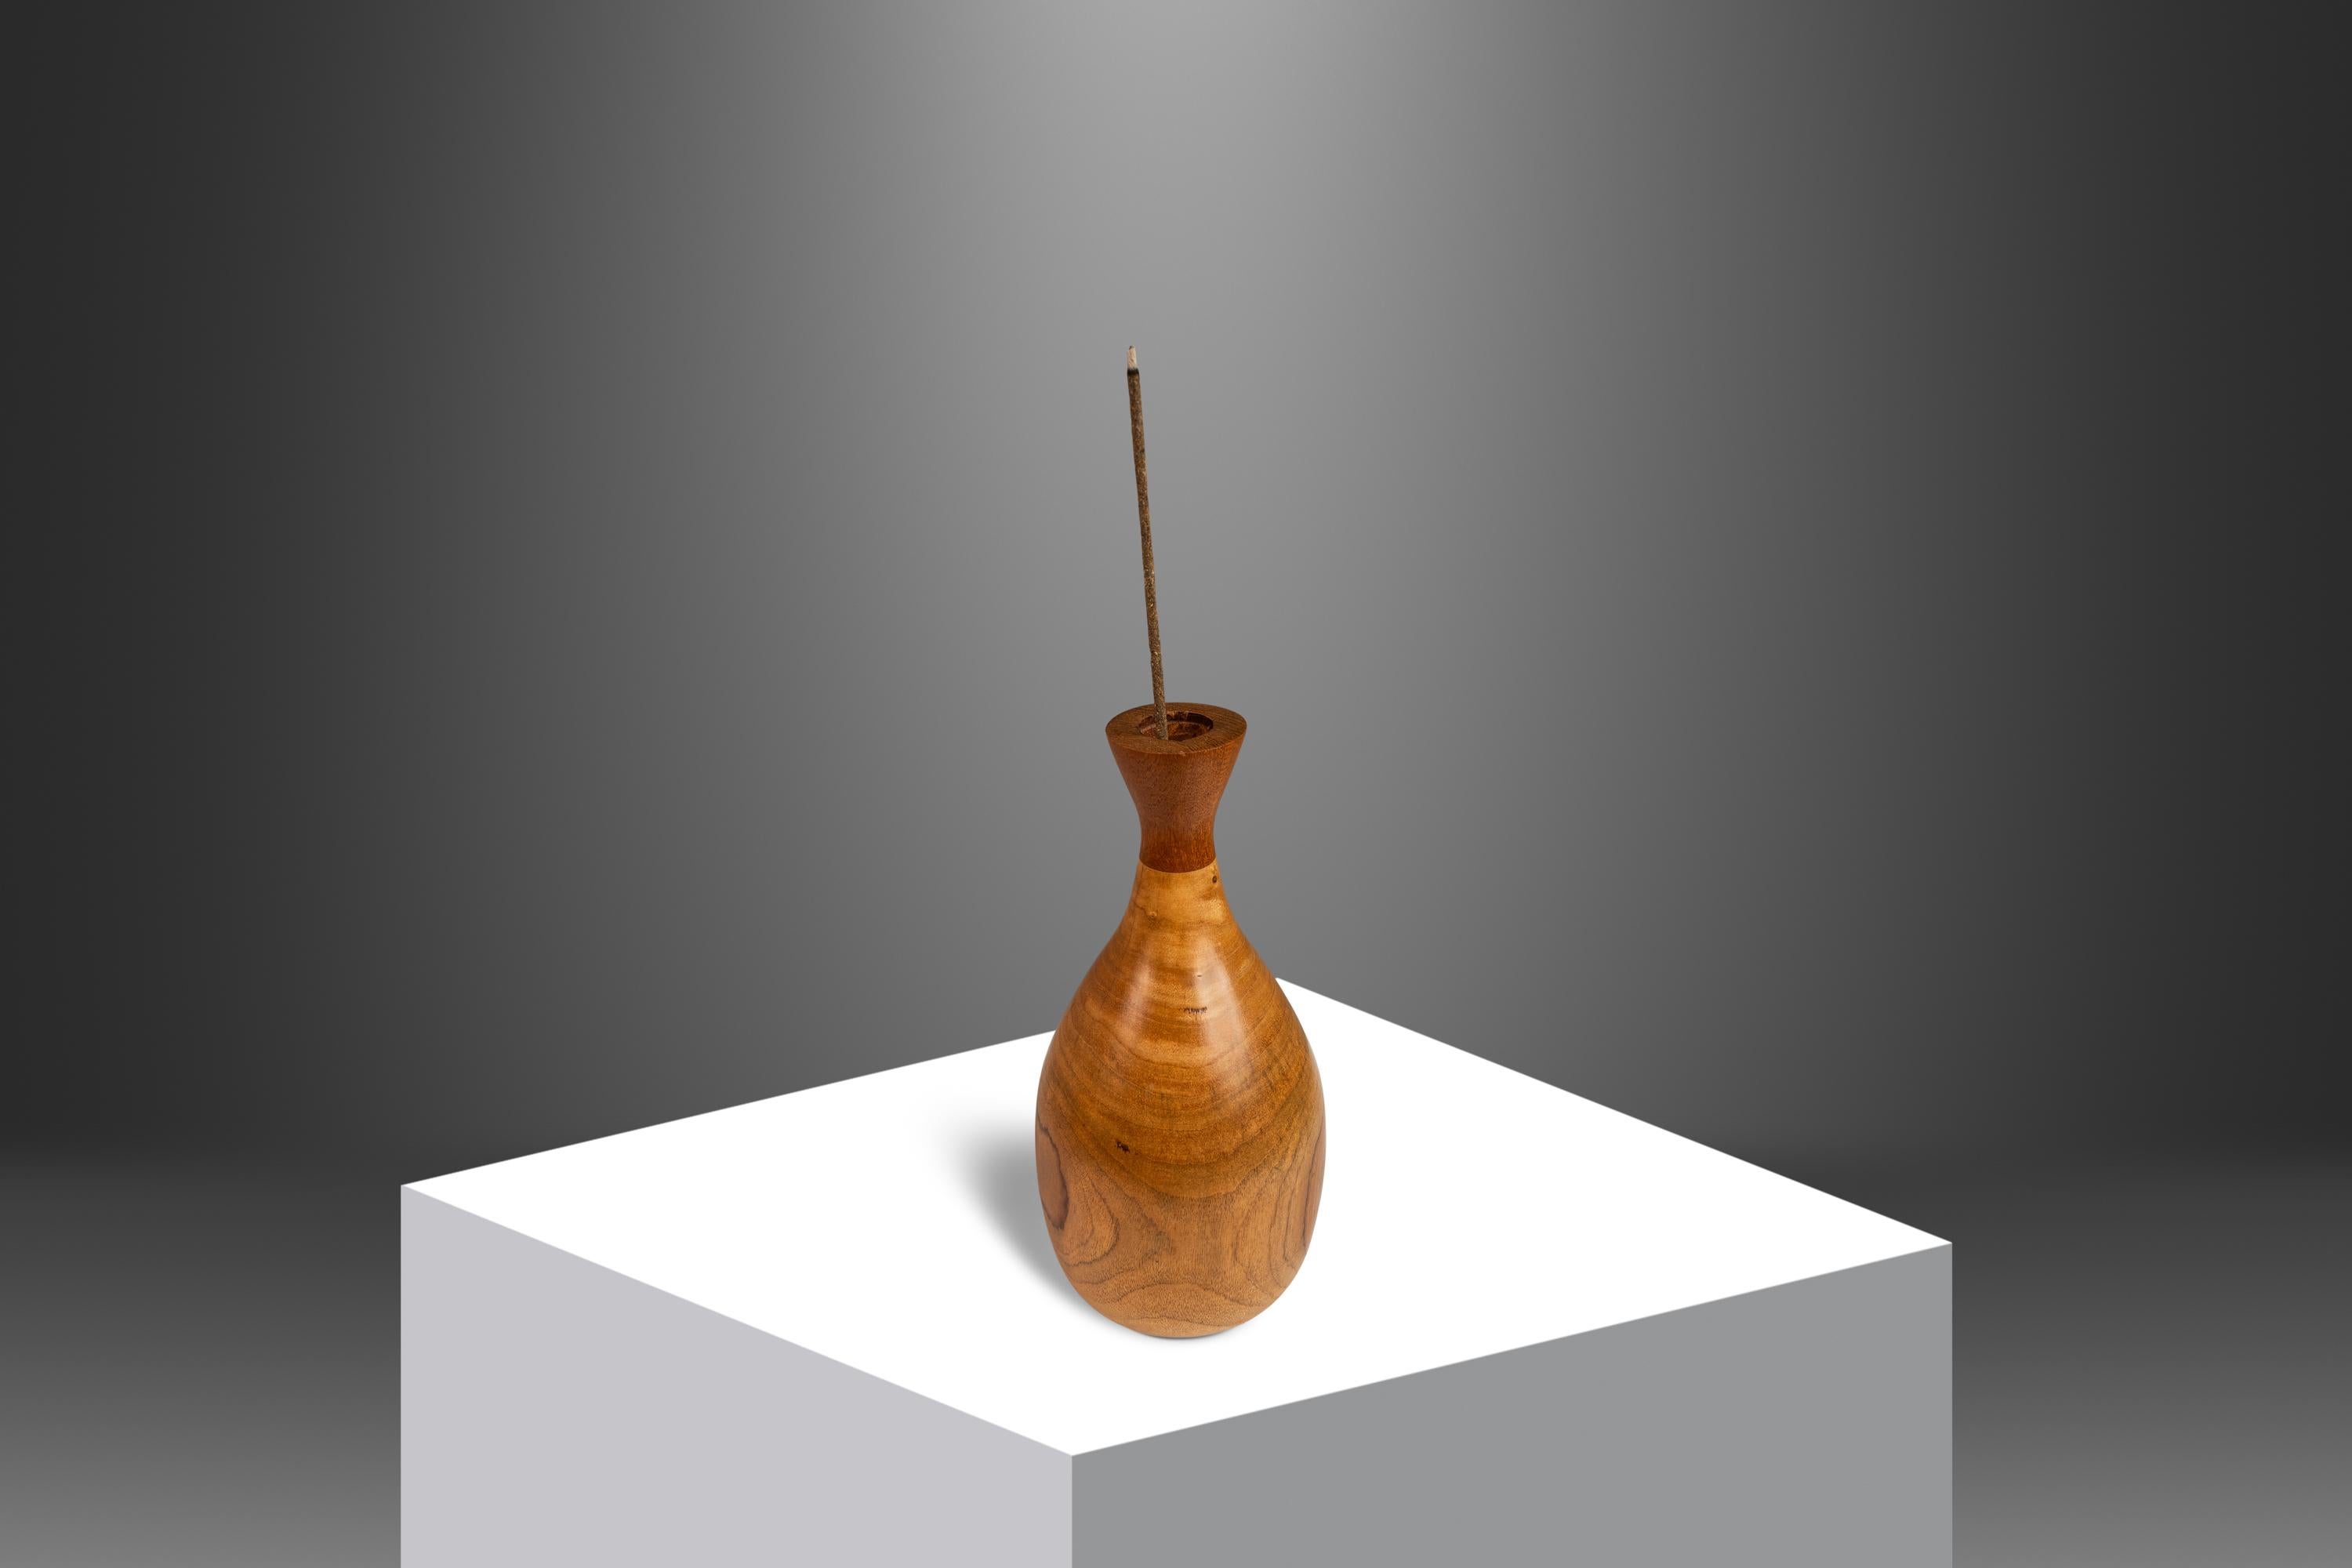  Voici un vase en bois tourné de style moderne du milieu du siècle, sculpté à la main à partir d'un bloc massif de bois de bouleau fascinant avec des grains de bois tourbillonnants qui sortent de l'ordinaire. La partie supérieure est fabriquée à